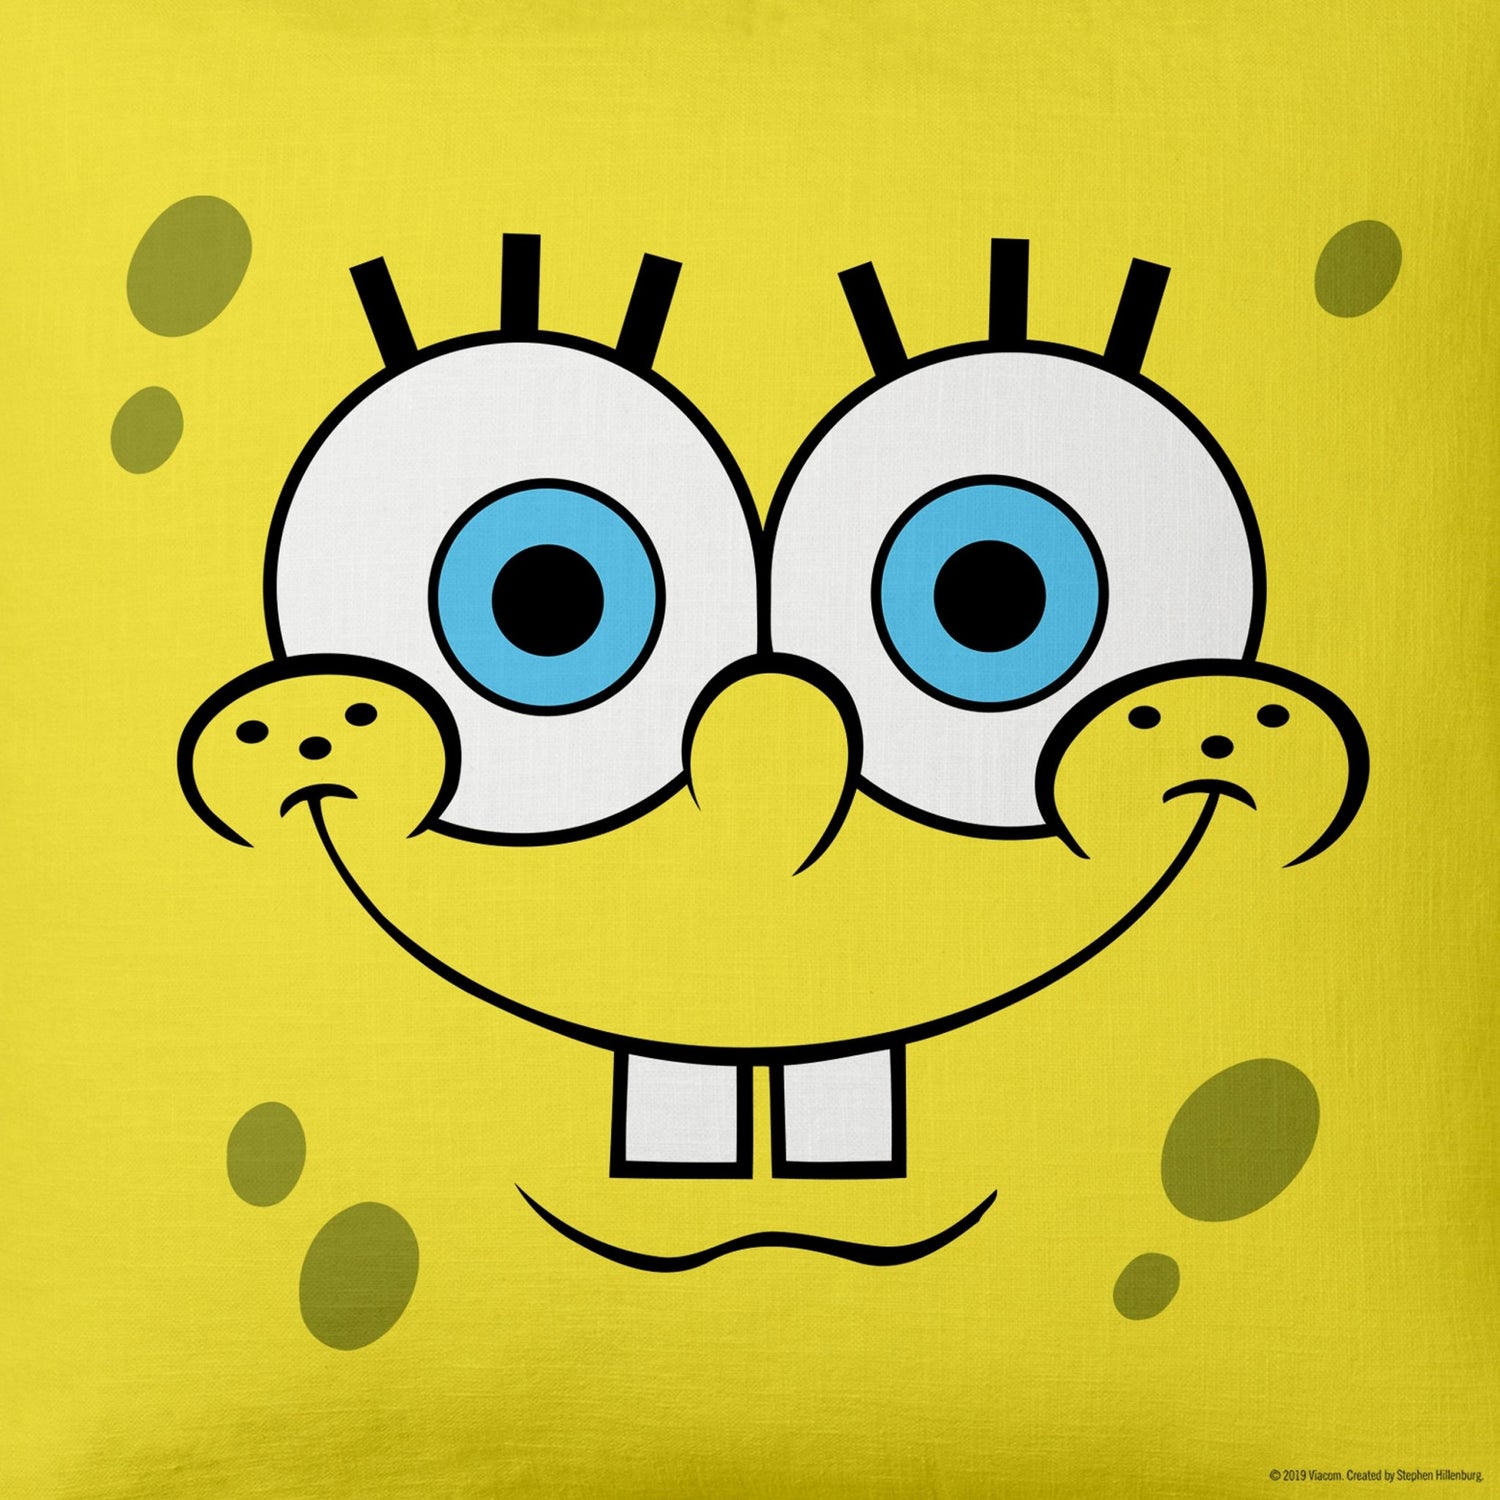 SpongeBob SquarePants Yellow Big Face Throw Pillow - 16" x 16" - Paramount Shop